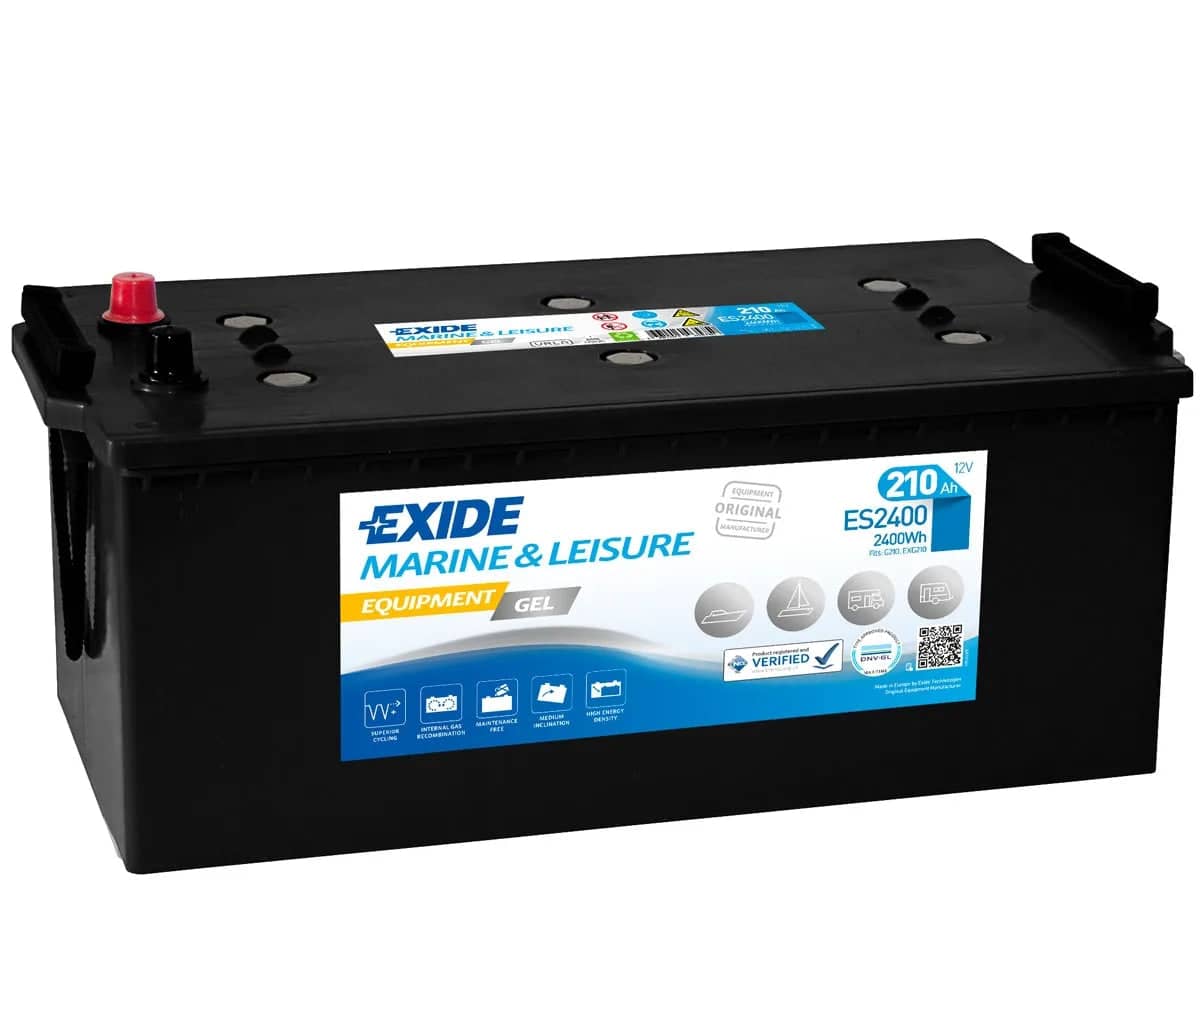 Exide ES2400 ( 625 ) Equipment GEL Marine and Leisure Battery 210Ah   ES2400